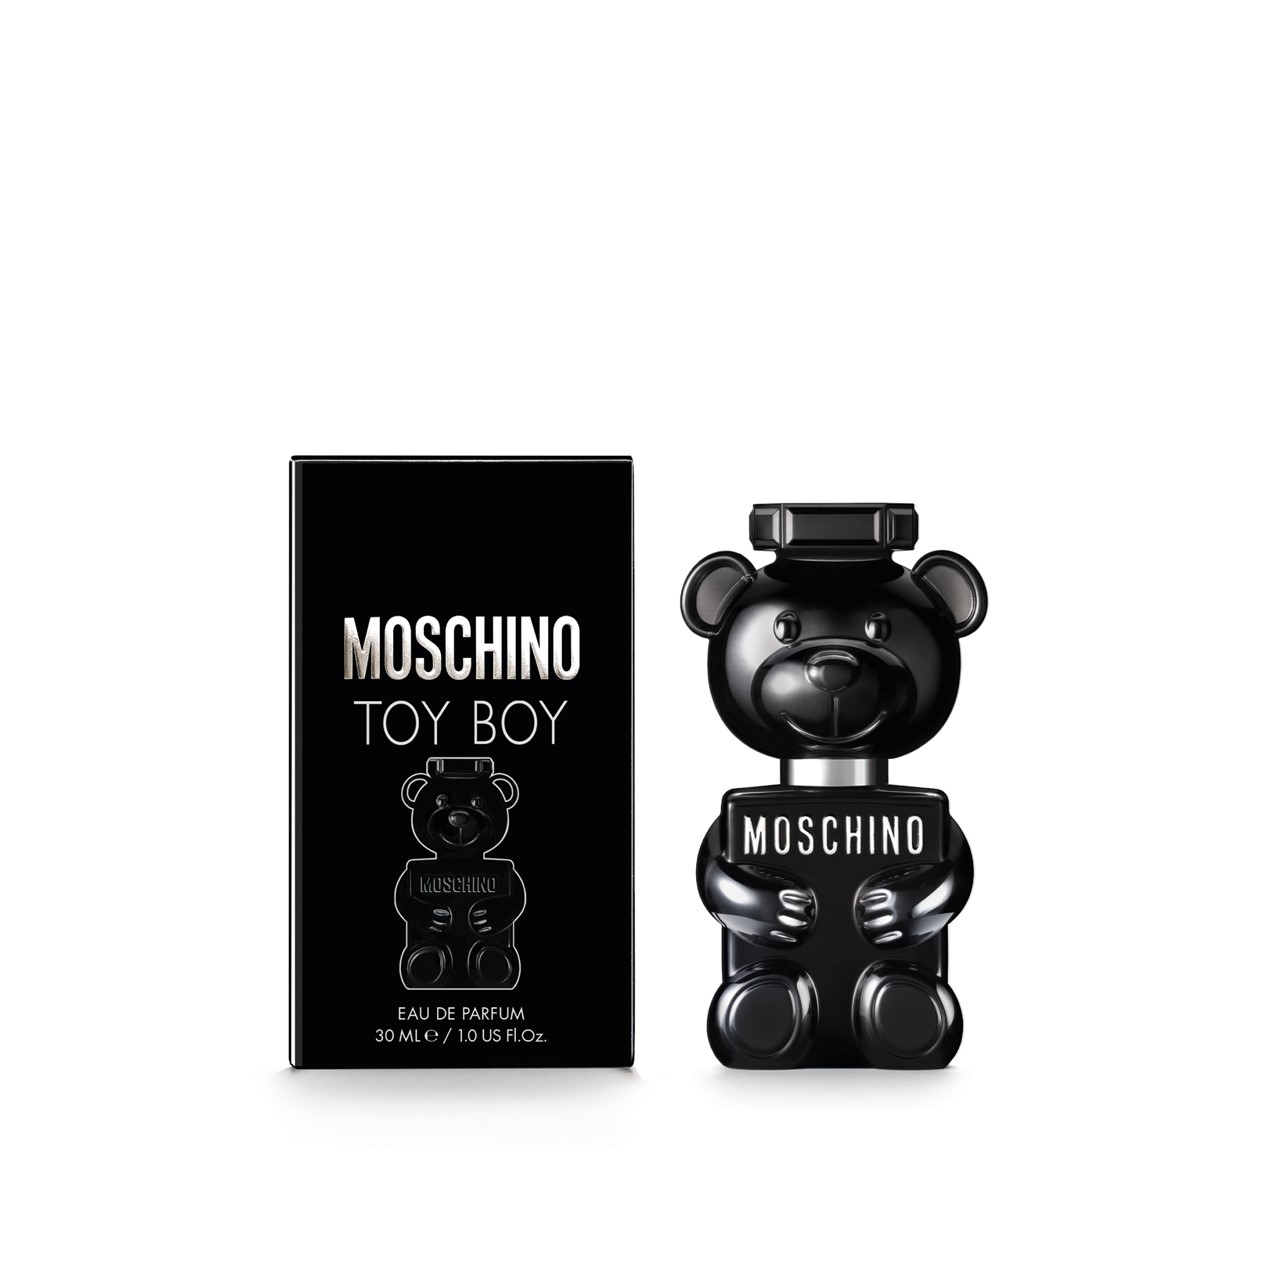 Moschino Toy Boy Eau de Parfum 30ml (1.0fl.oz.)